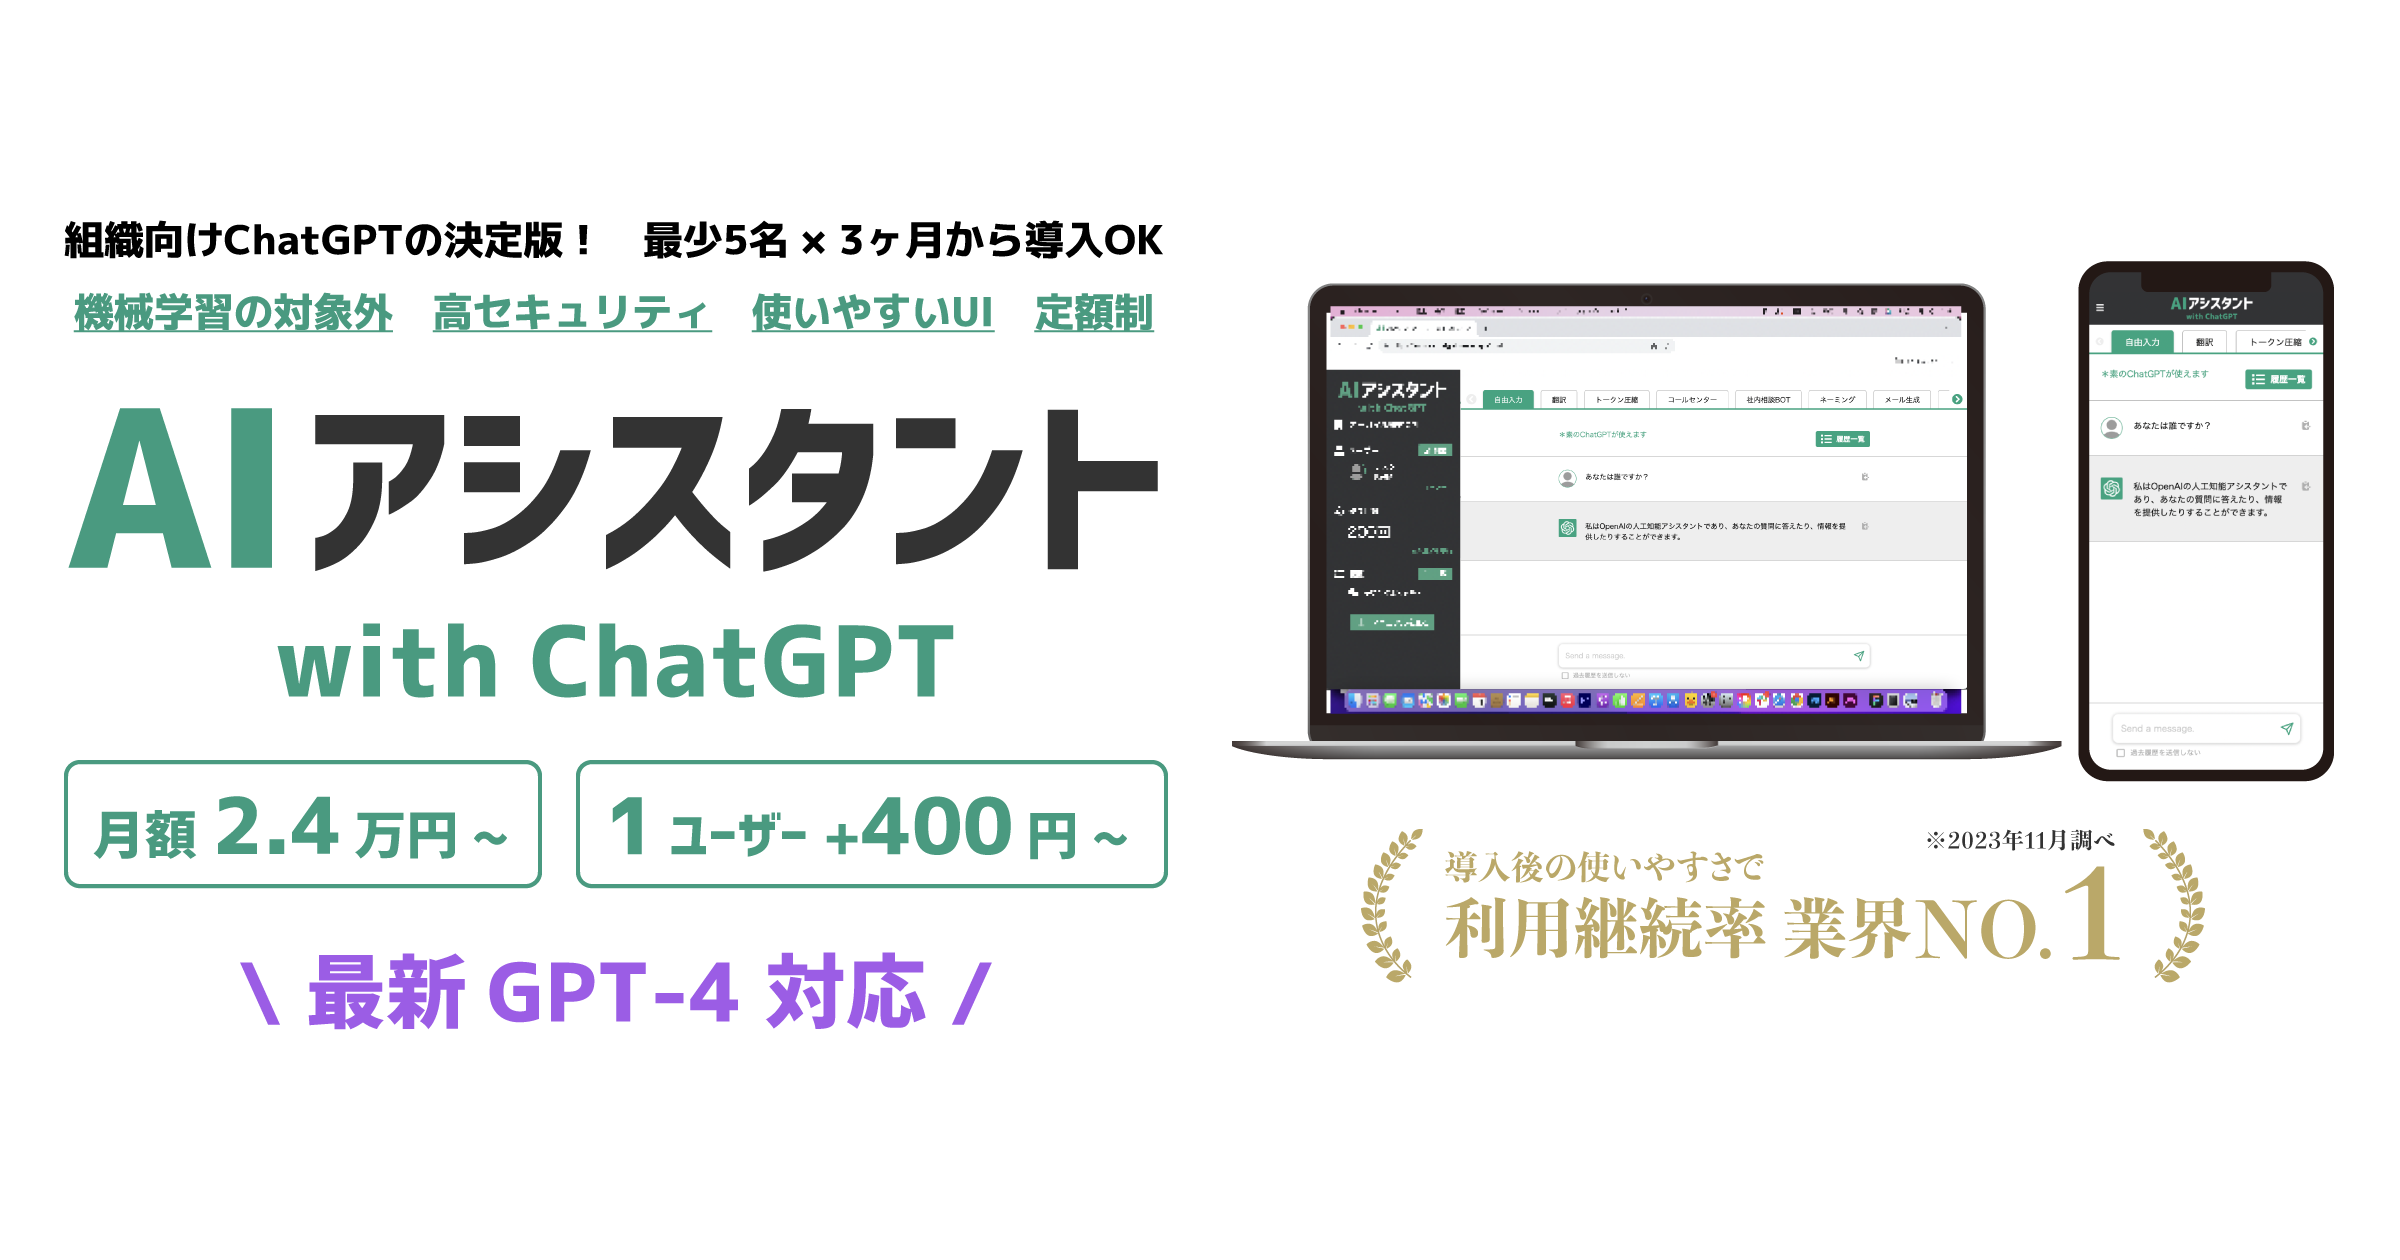 GPT-4対応「AIアシスタント」ChatGPT法人利用パッケージ